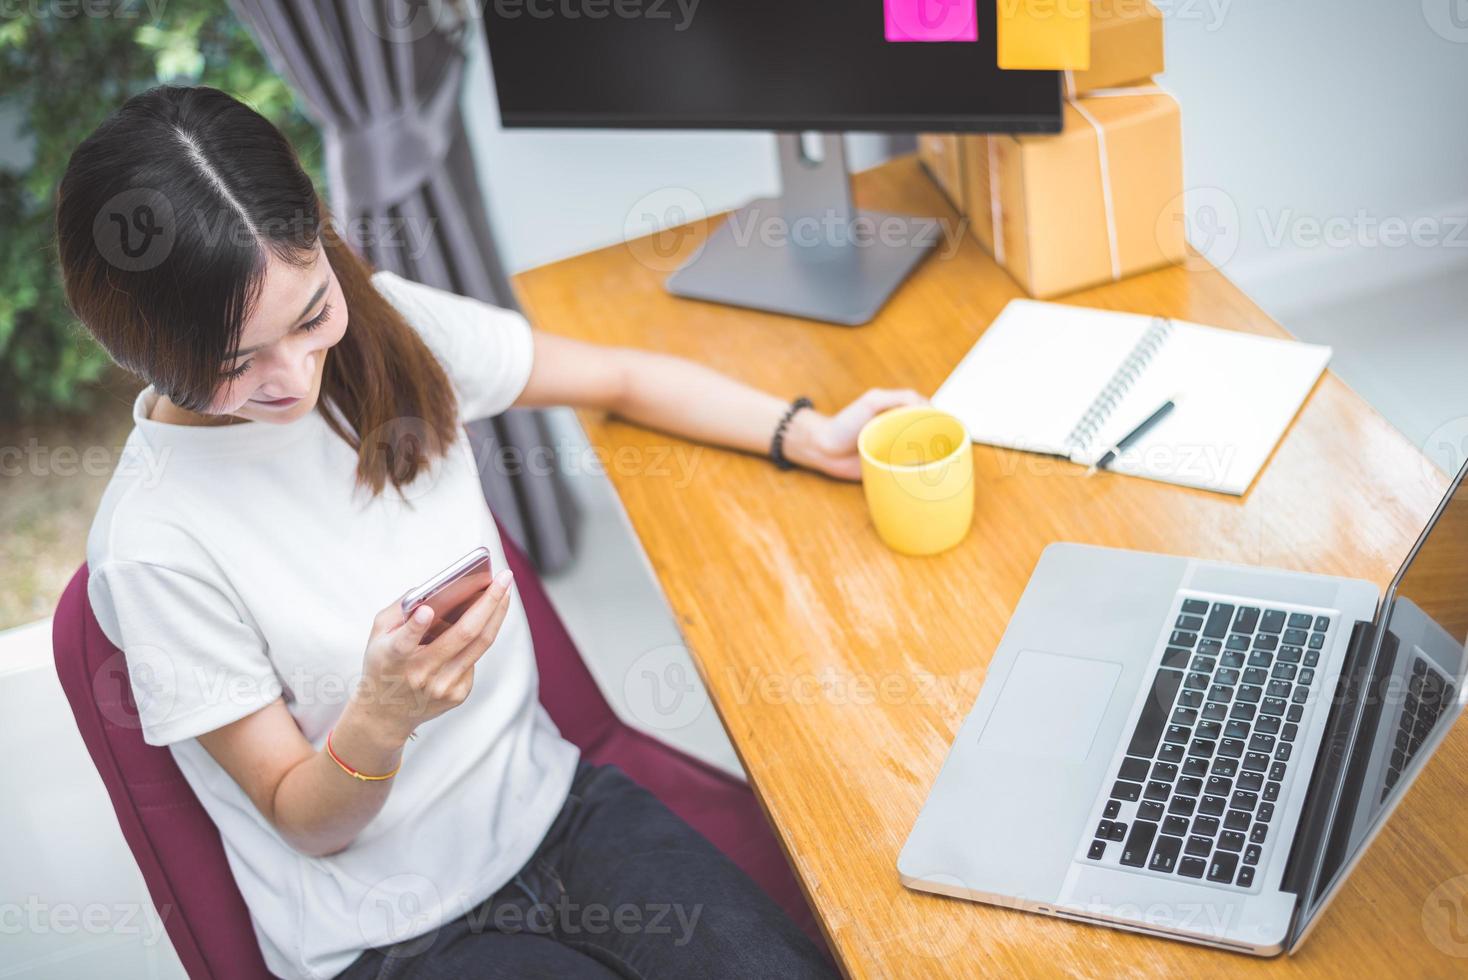 bovenaanzicht van vrouw die mobiele telefoon en laptop gebruikt om te winkelen foto